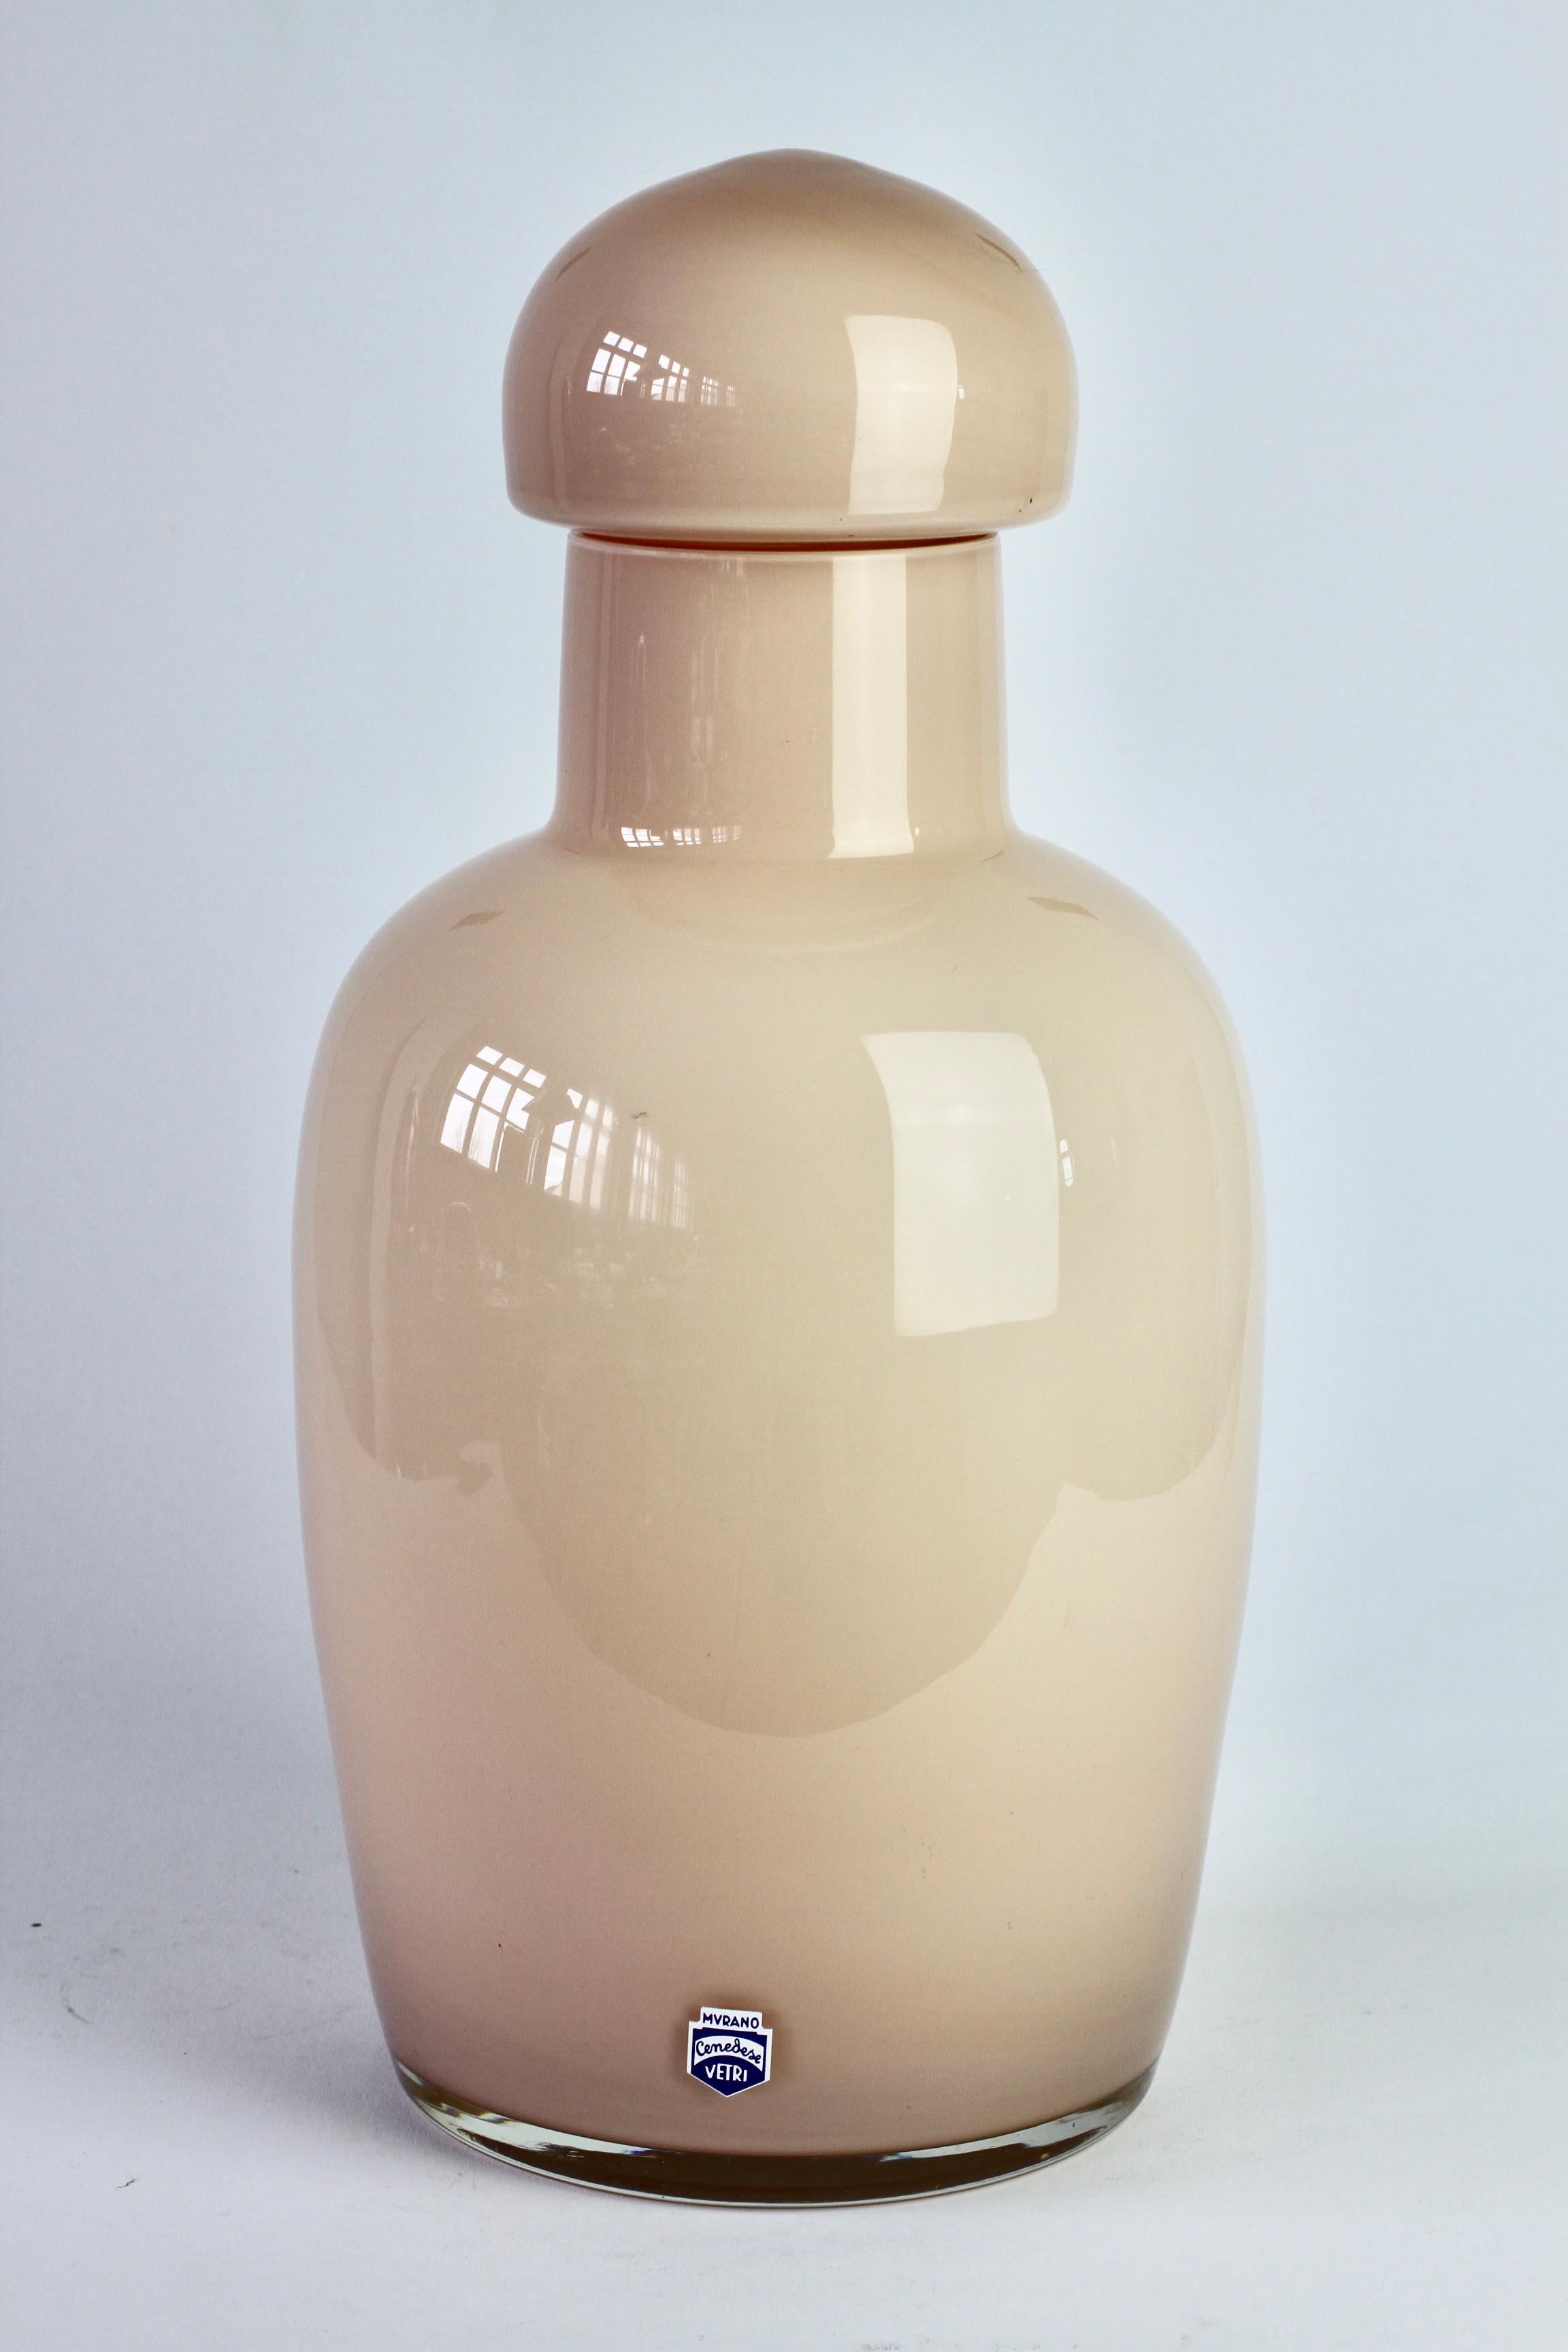 Cenedese Vintage Mitte des Jahrhunderts Murano-Glas Vase, Gefäß, Keksdose oder Urne in Italien hergestellt, ca. 1970-1990. Besonders auffällig sind die Form und die Größe. Es hat die Eigenschaften von handgedrehten Töpferwaren mit dem